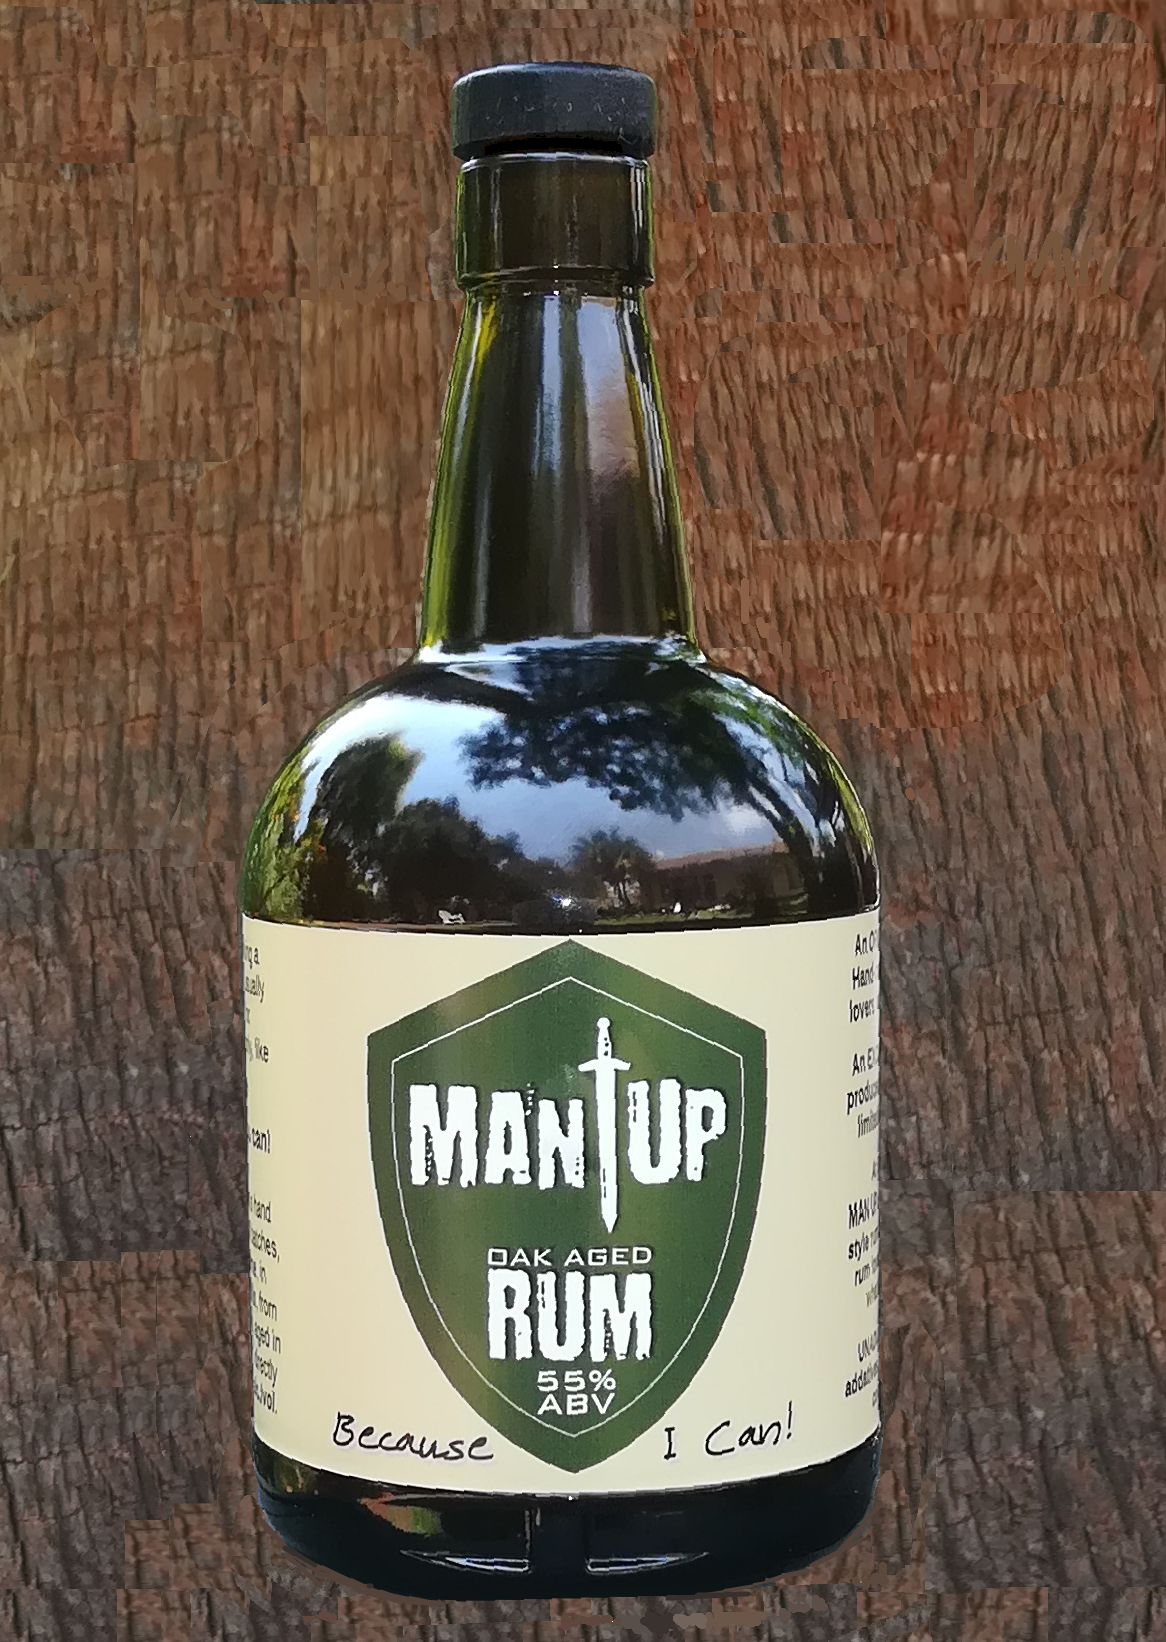 Man Up rum